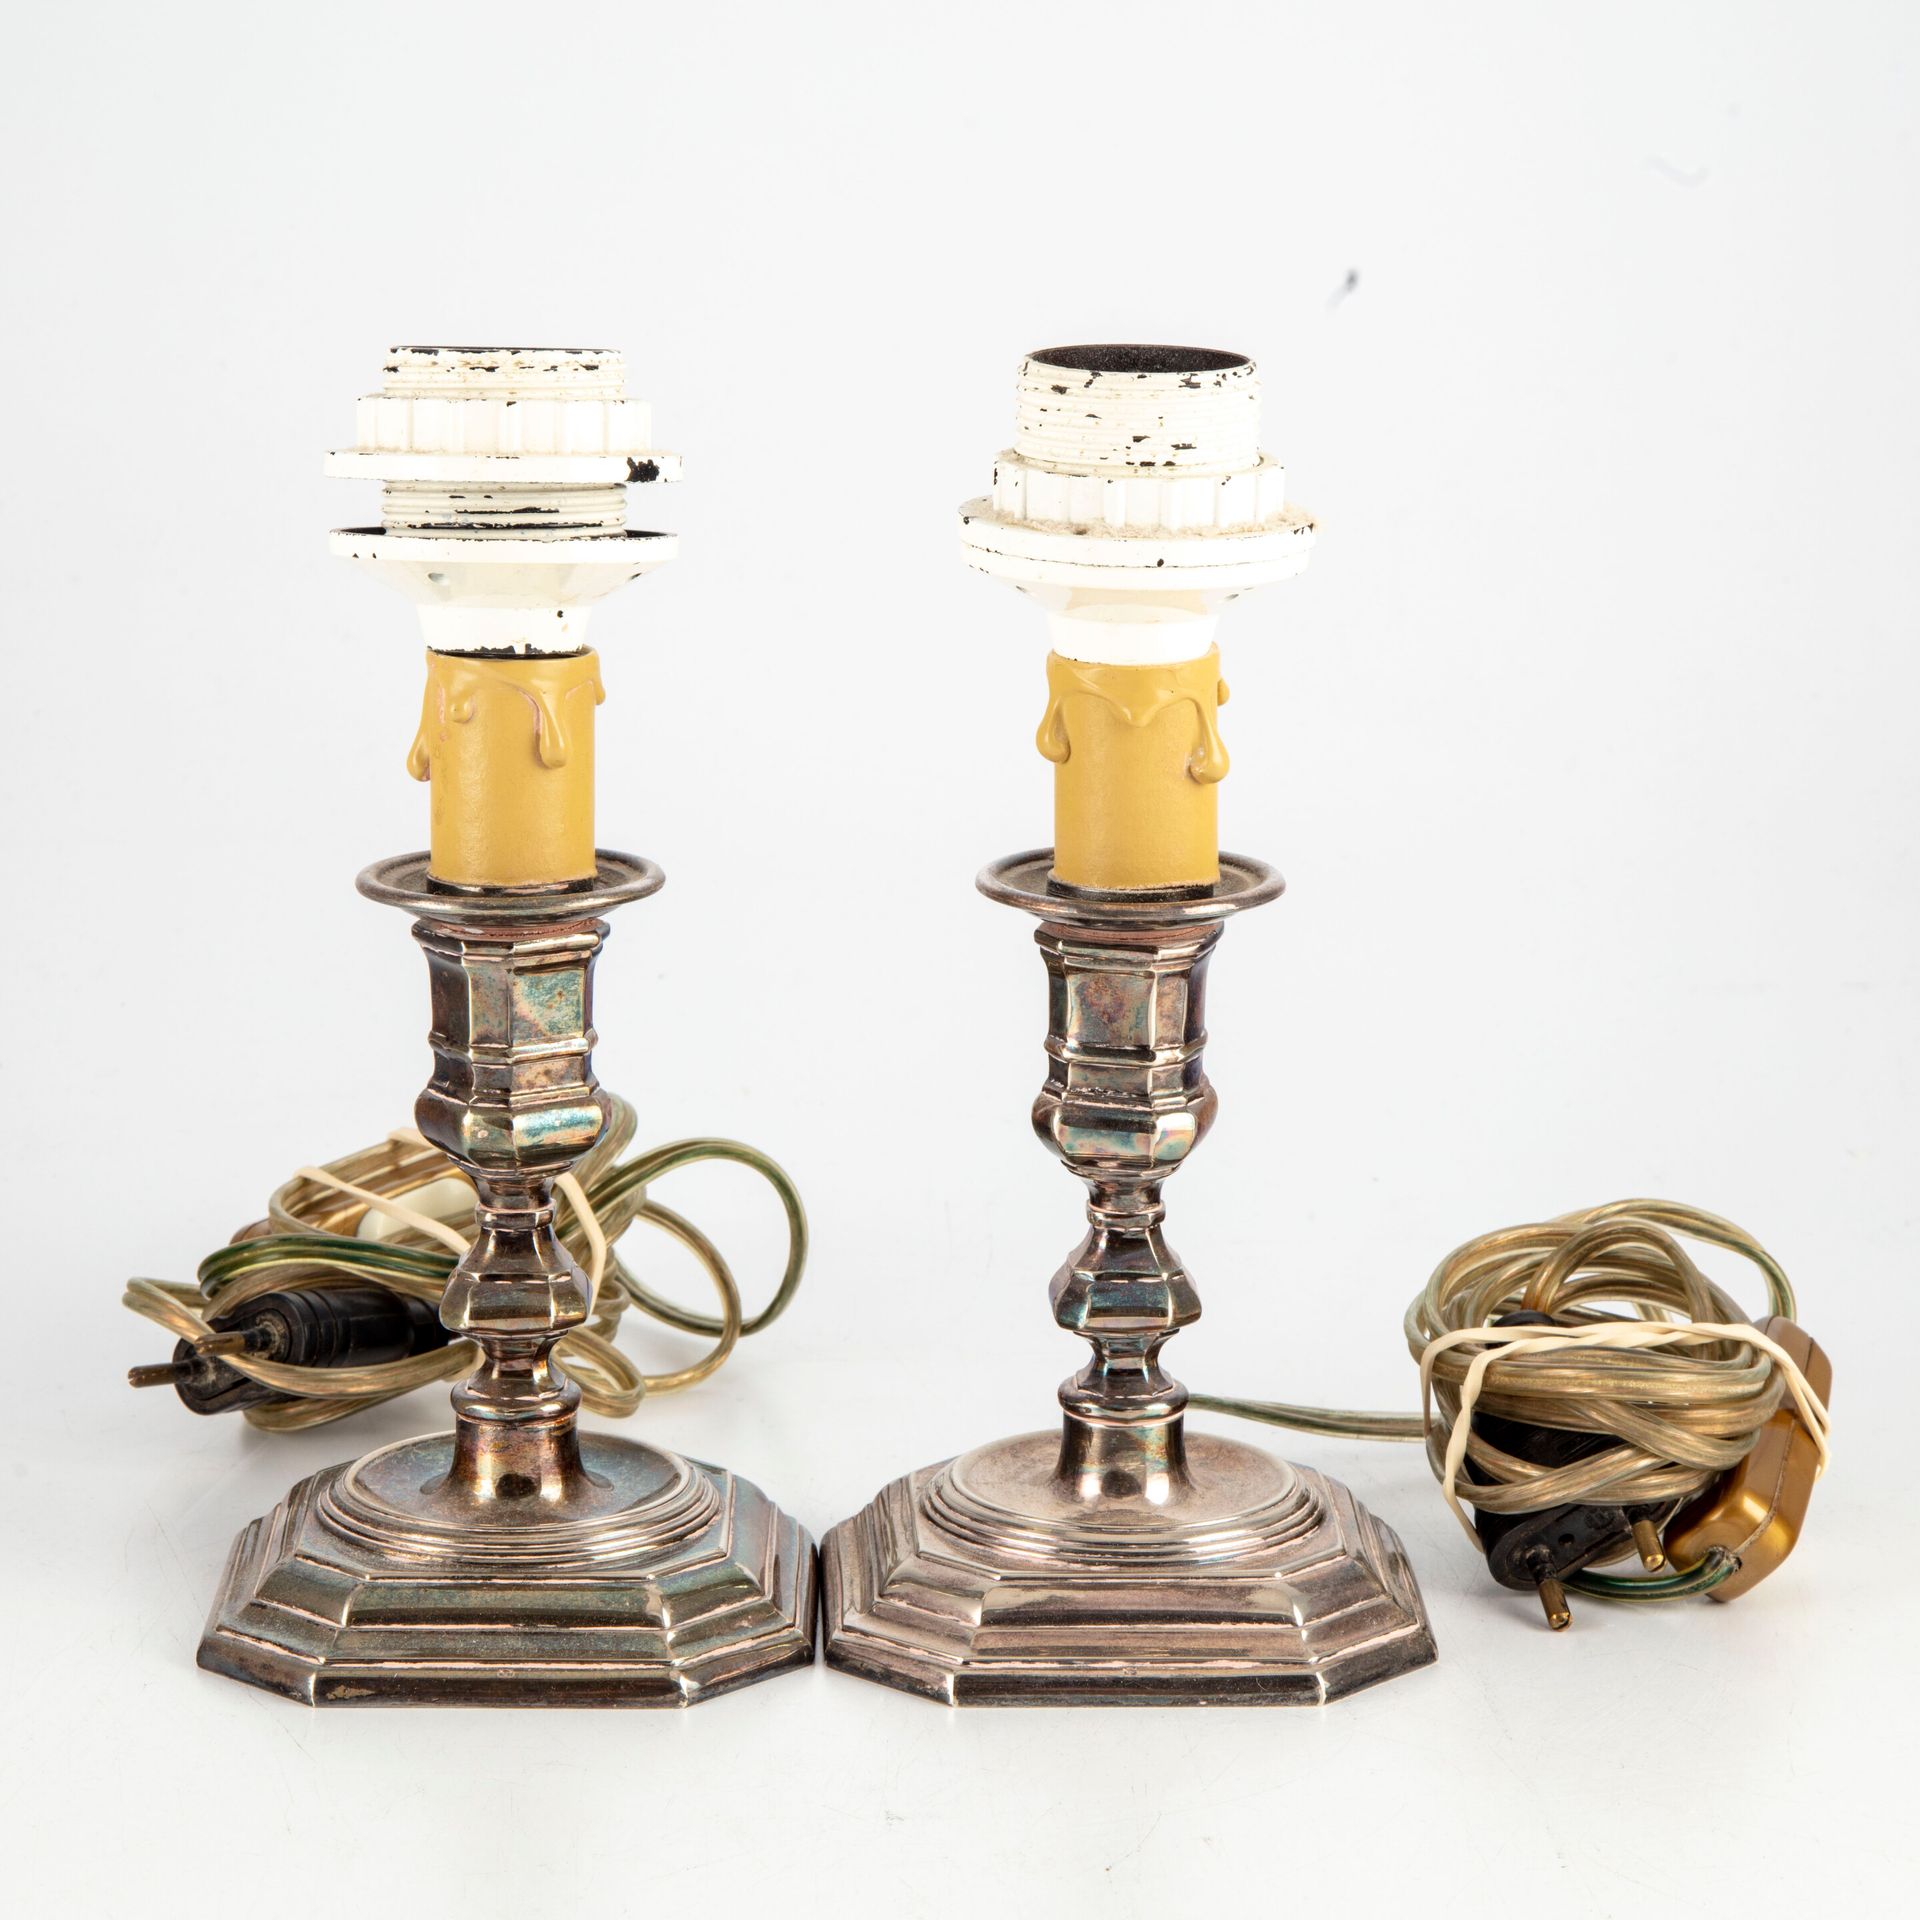 Null Paire de flambeaux en métal argenté

Montés en lampes

H.: 13,5 cm

Usures